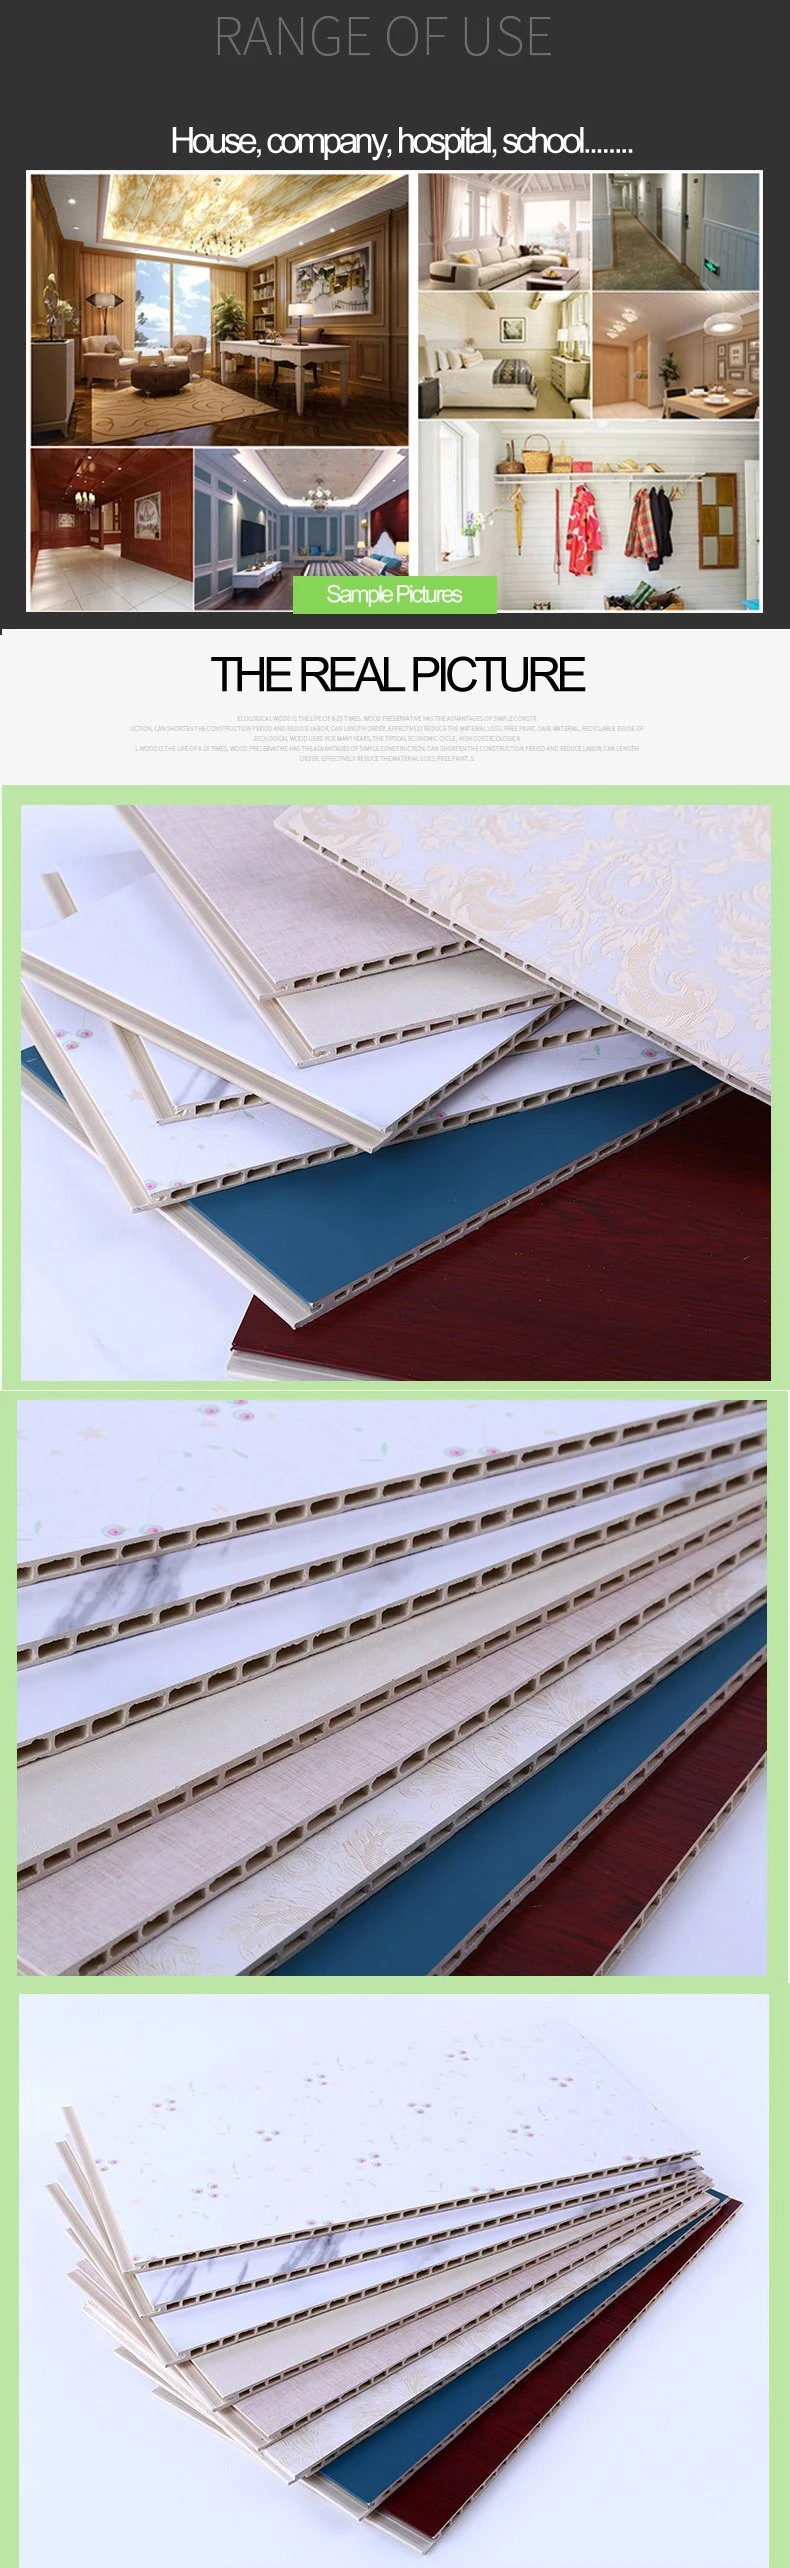 Wholesale Imitation Marble PVC Panel/PVC Sheet/PVC Marble Sheet